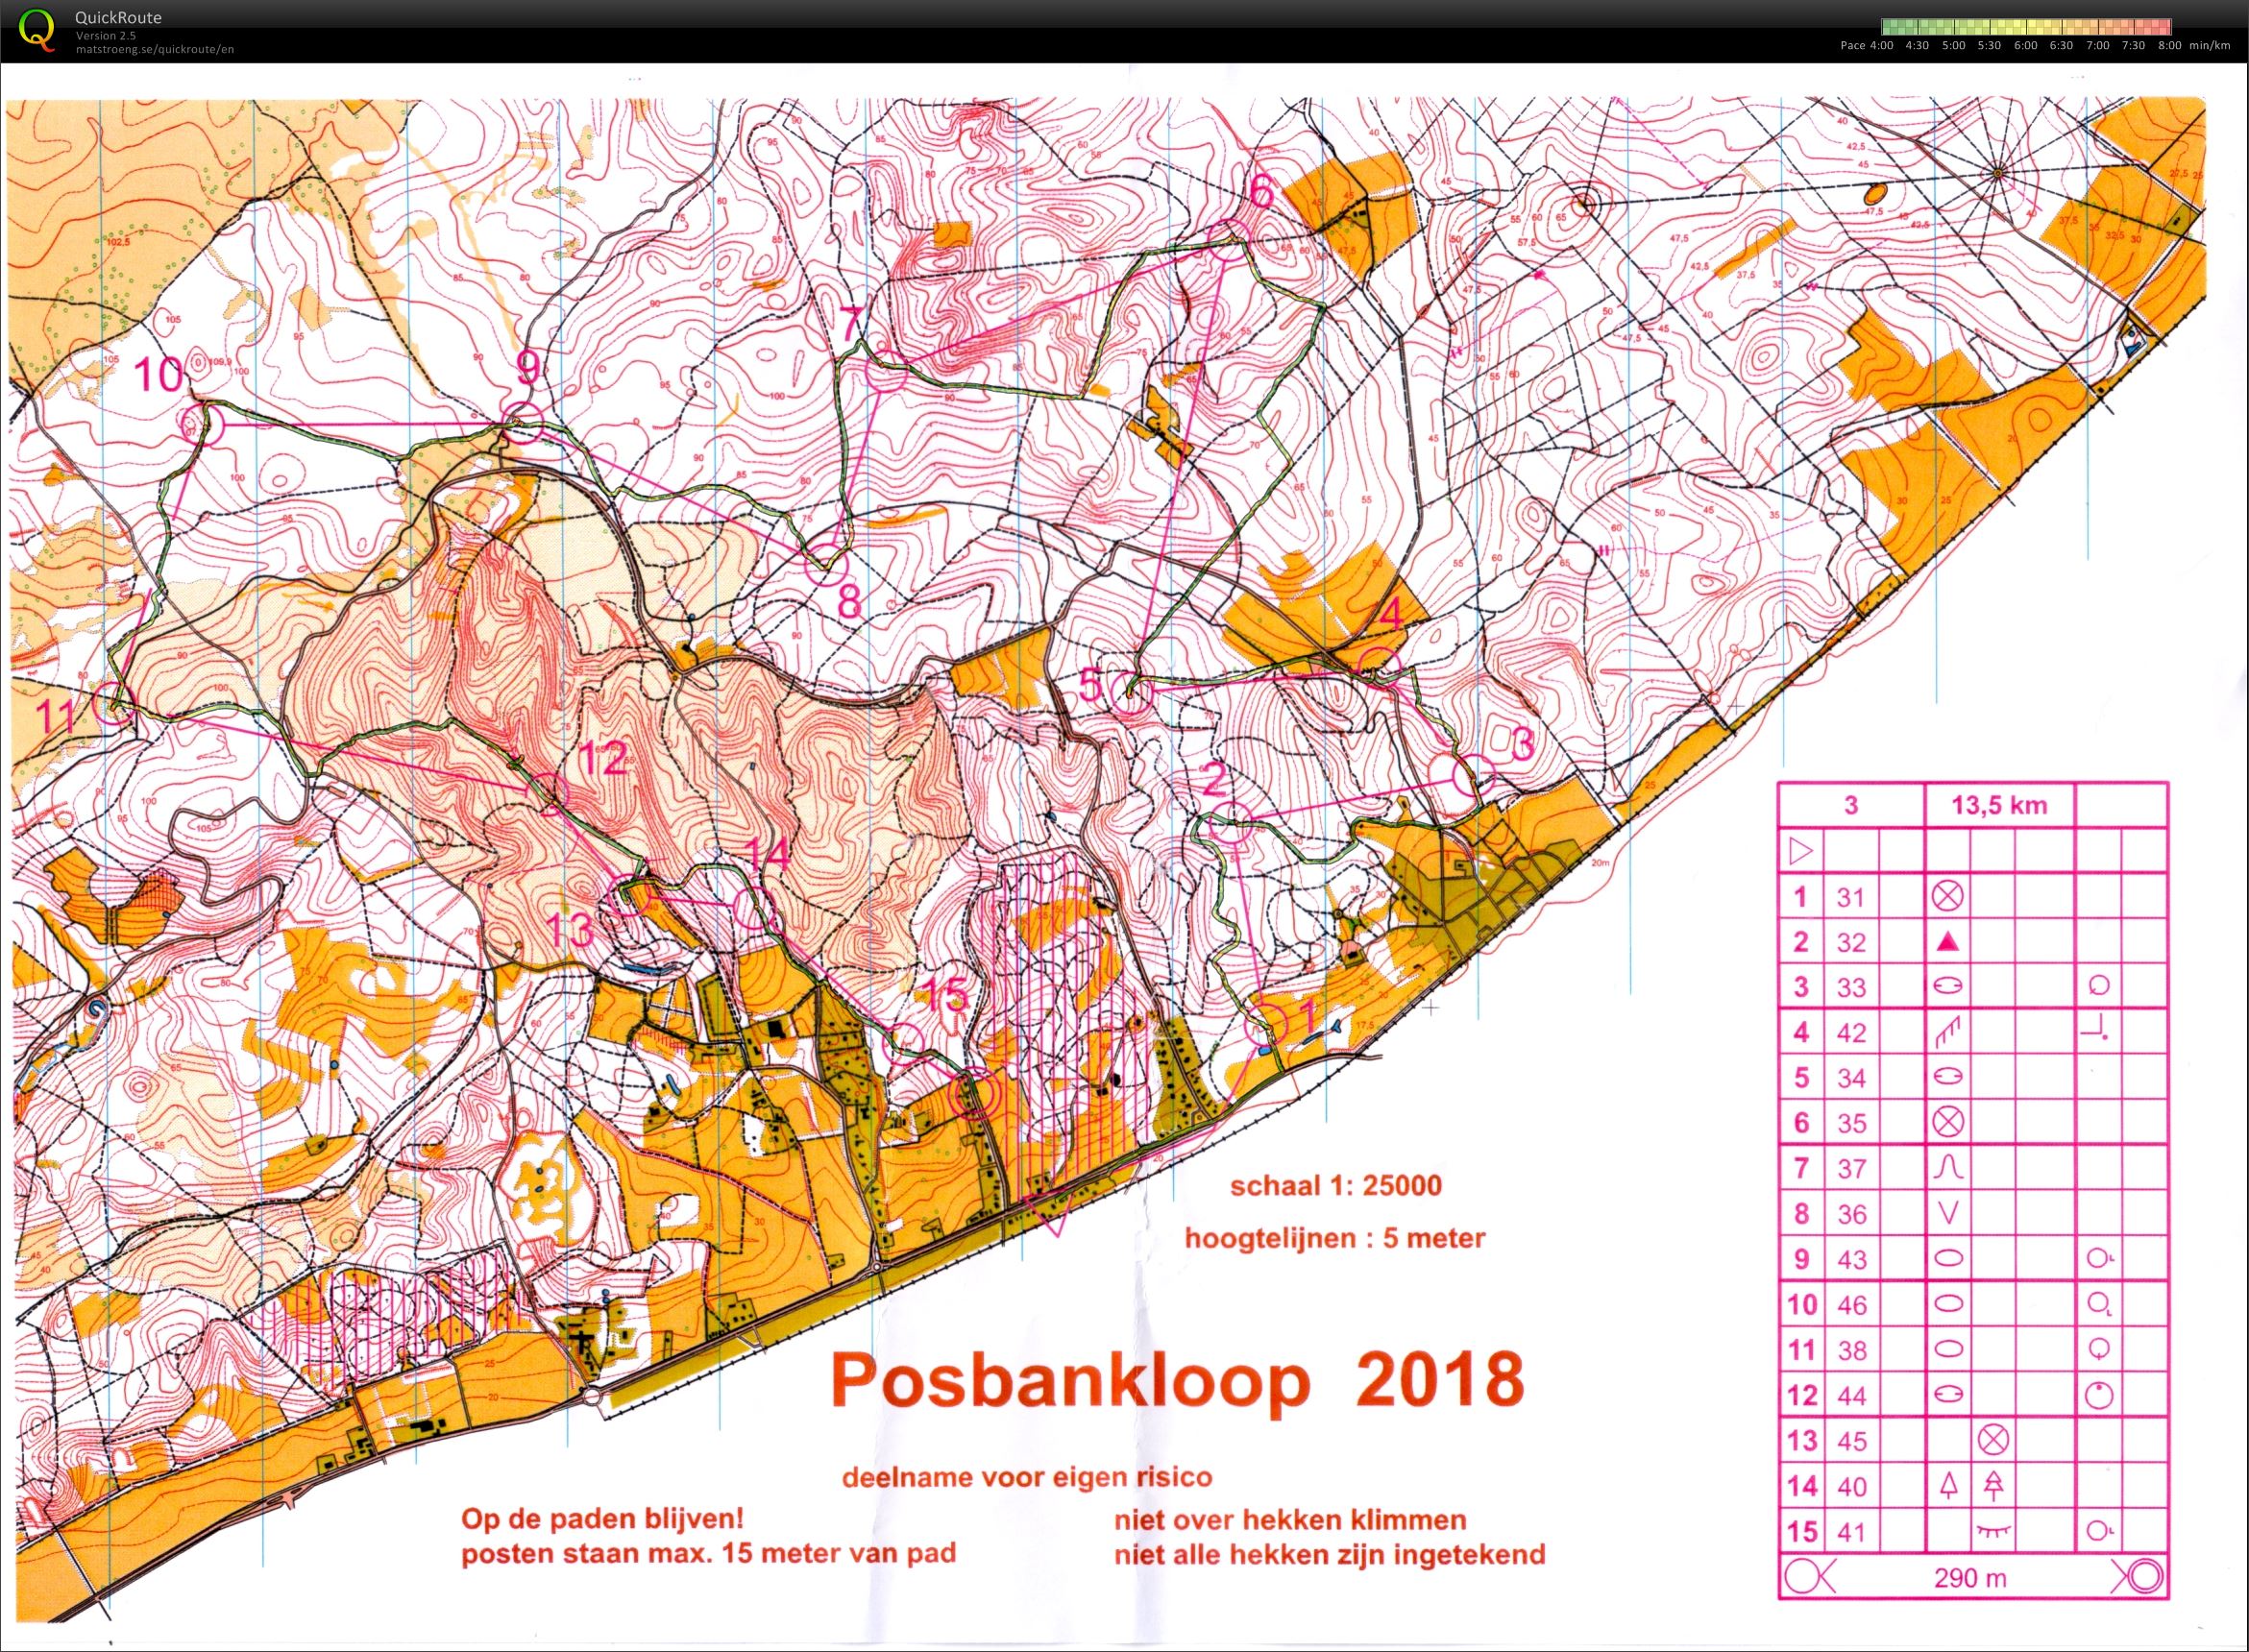 Posbankloop 2018 (2018-03-17)